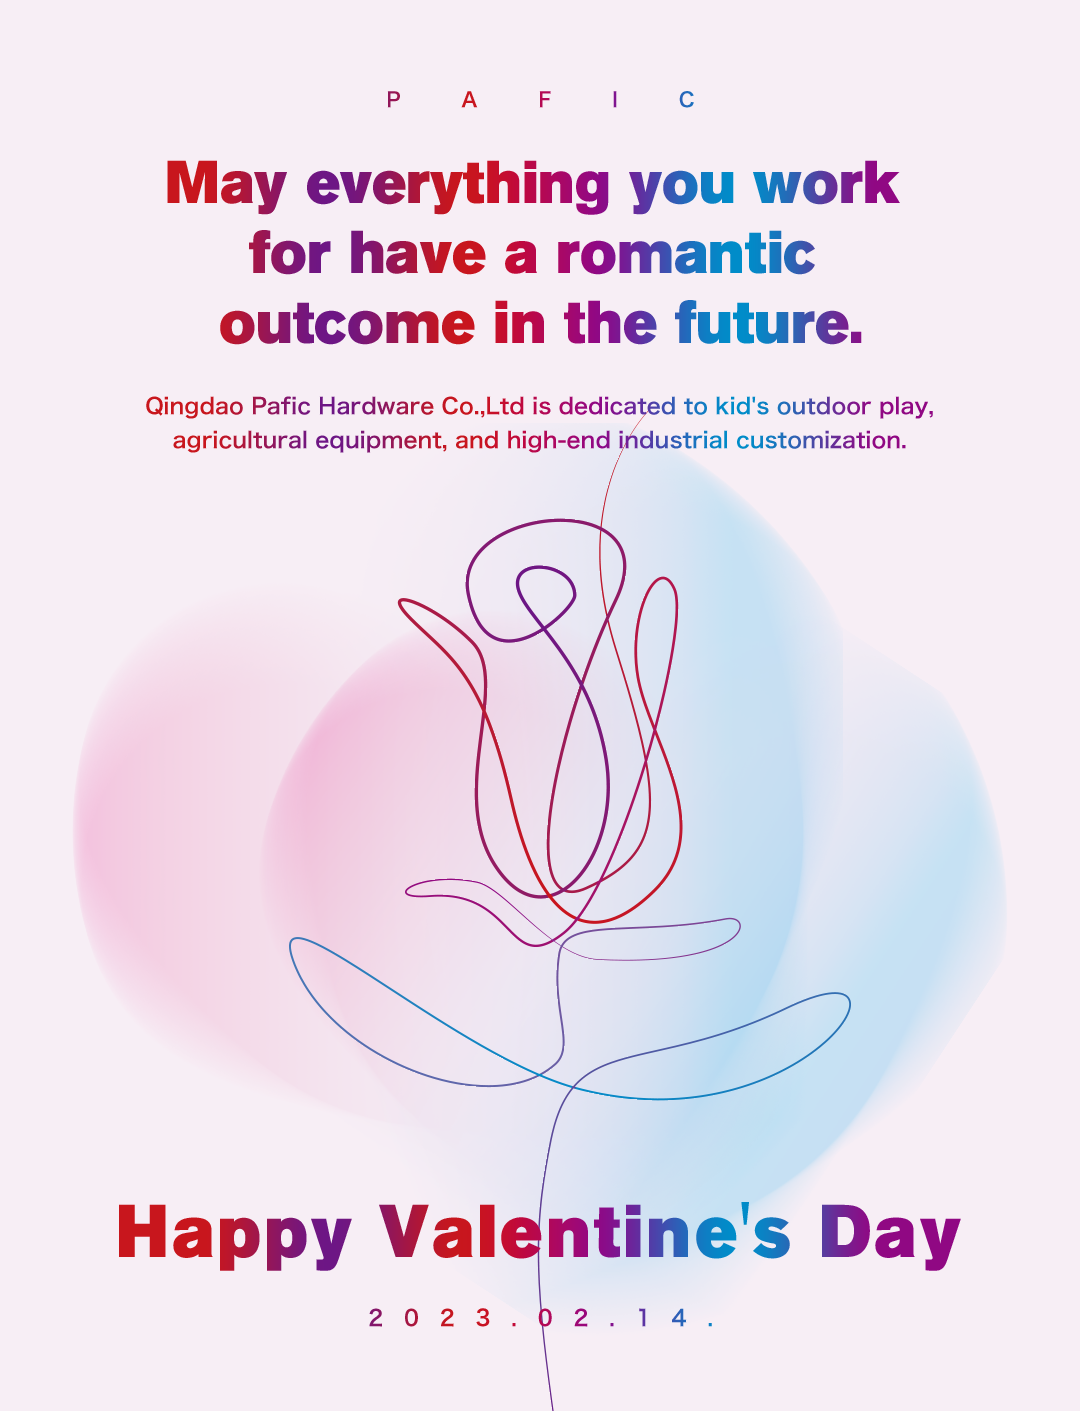 Joyeuse Saint-Valentin - Que tout ce pour quoi vous travaillez ait un résultat romantique à l'avenir